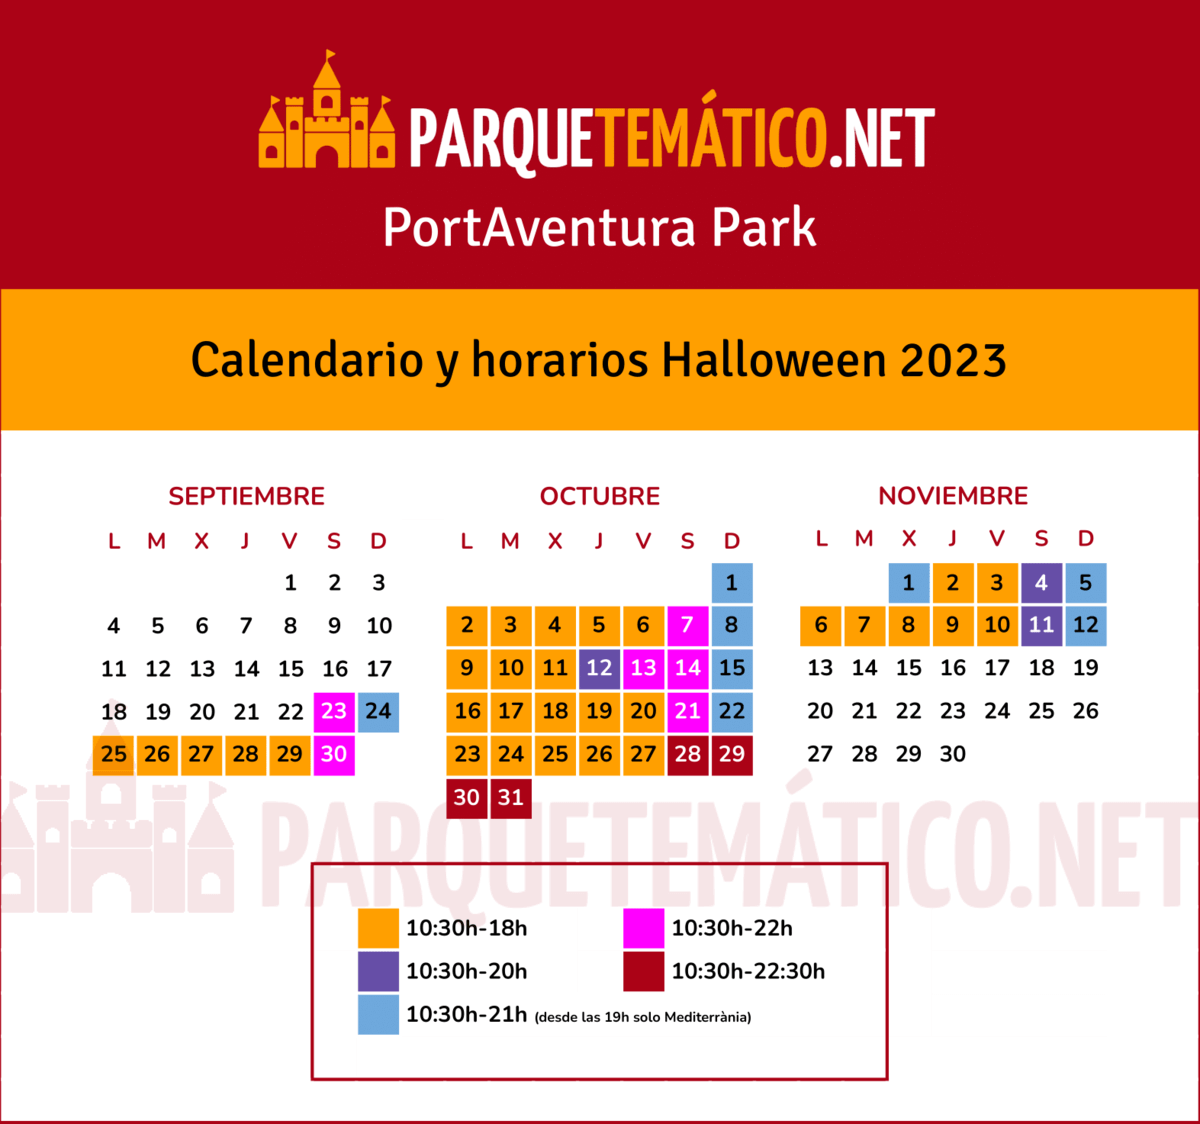 Calendario y horarios de apertura Halloween PortAventura 2023